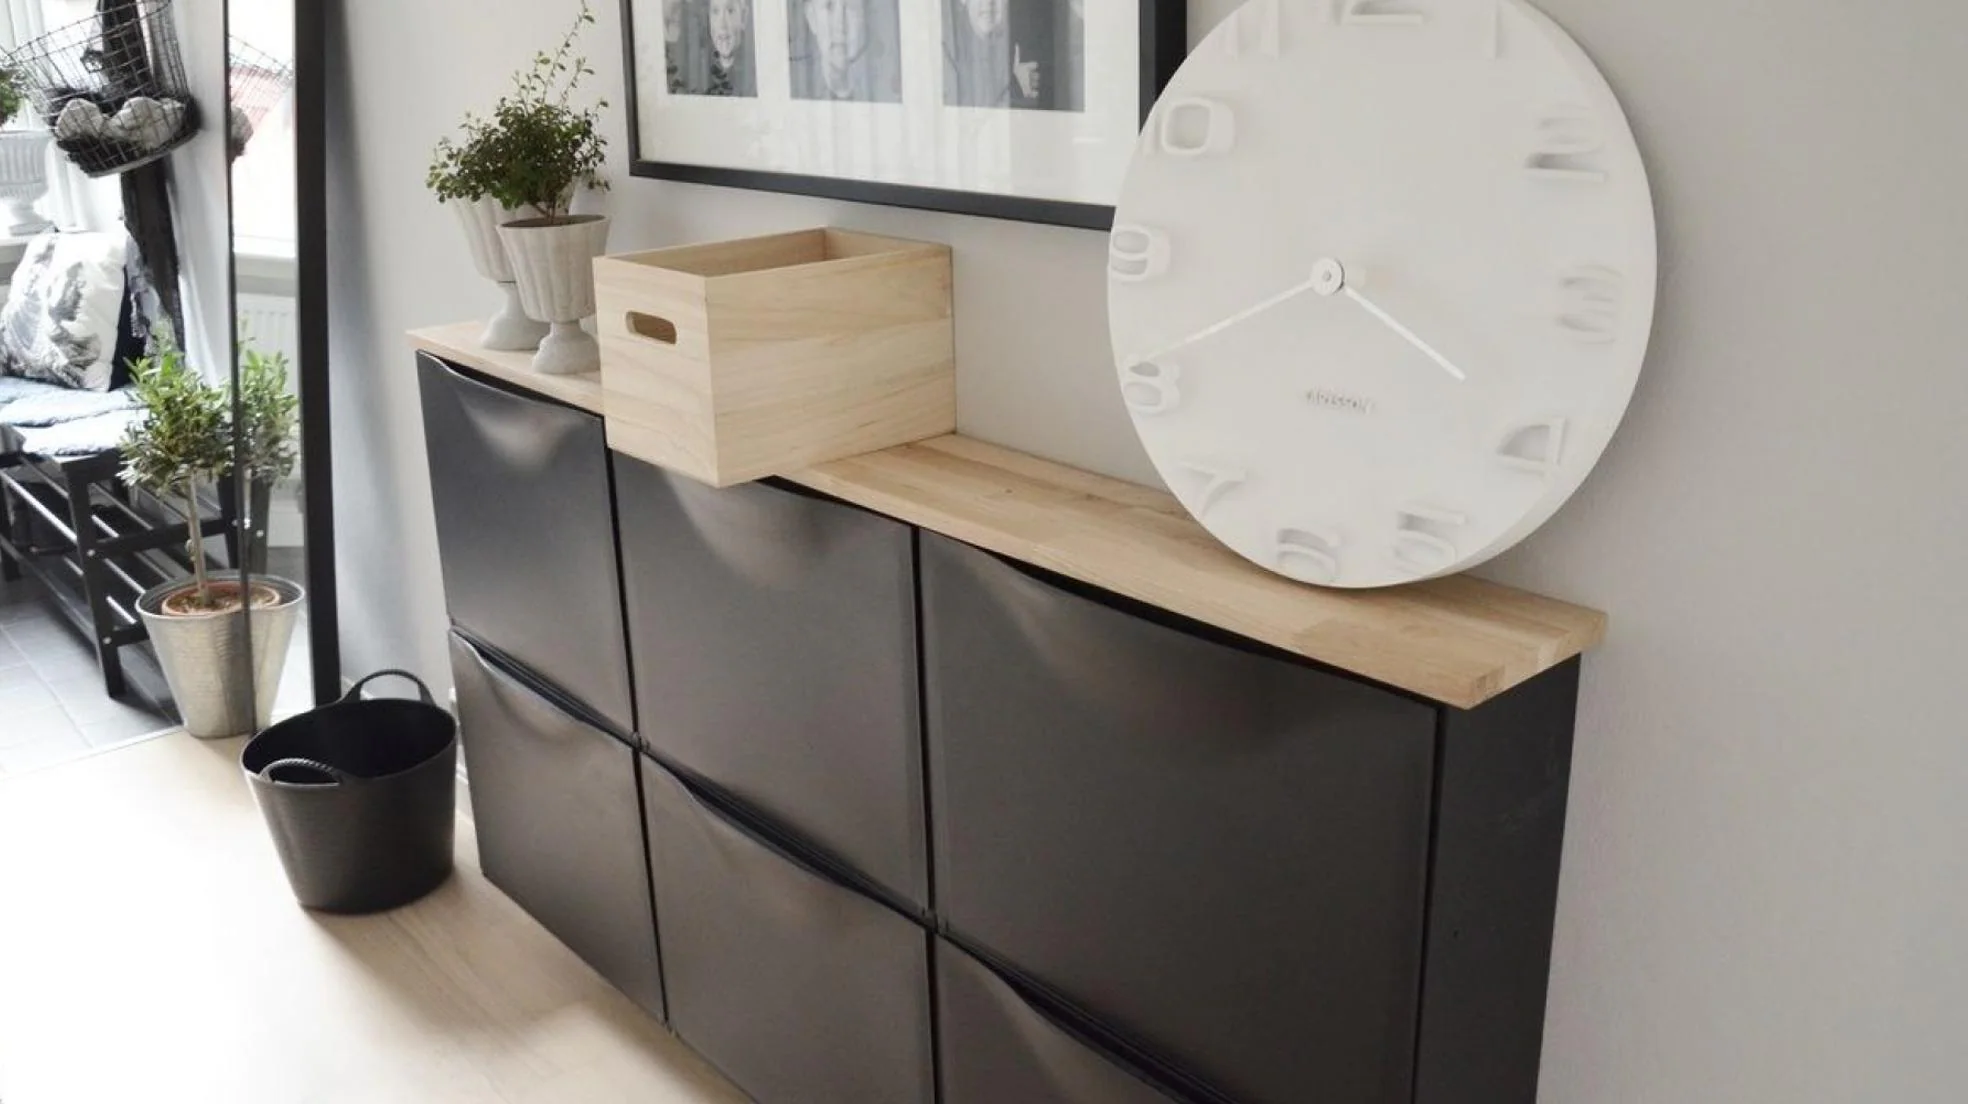 El zapatero bonito y de IKEA que puedes transformar en un precioso mueble de lujo con estas 10 ideas DIY geniales (y muy fáciles) | Hoy